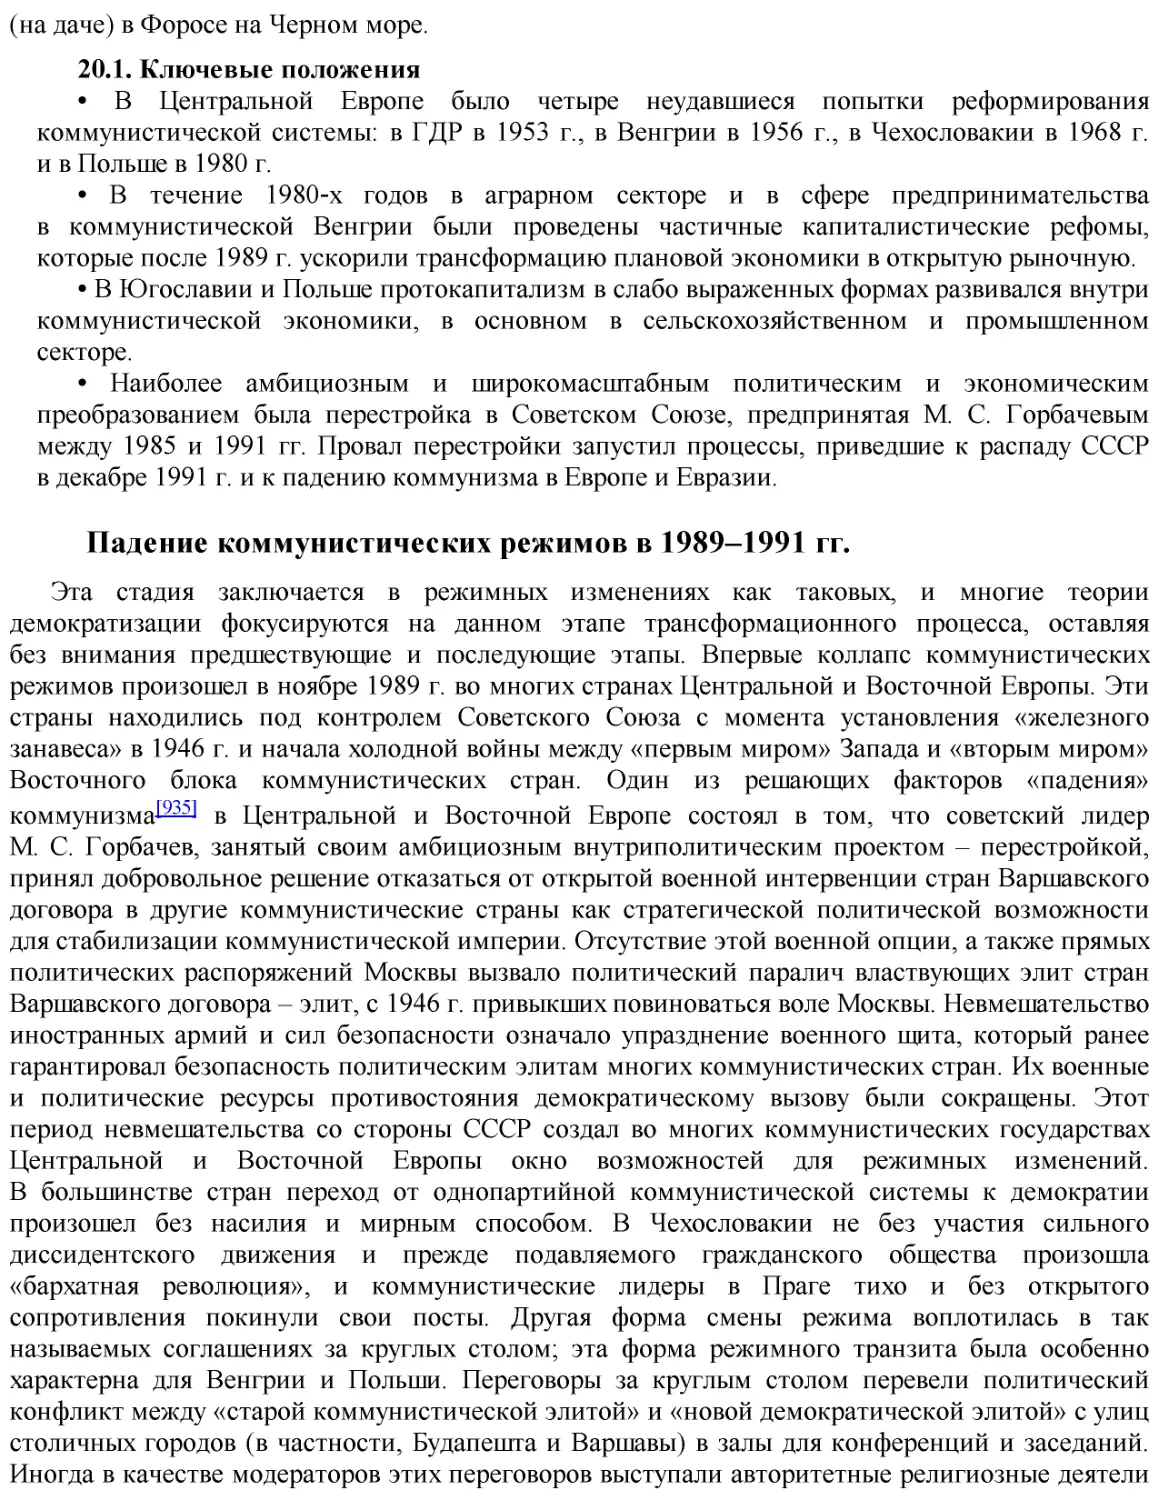 Падение коммунистических режимов в 1989–1991 гг.